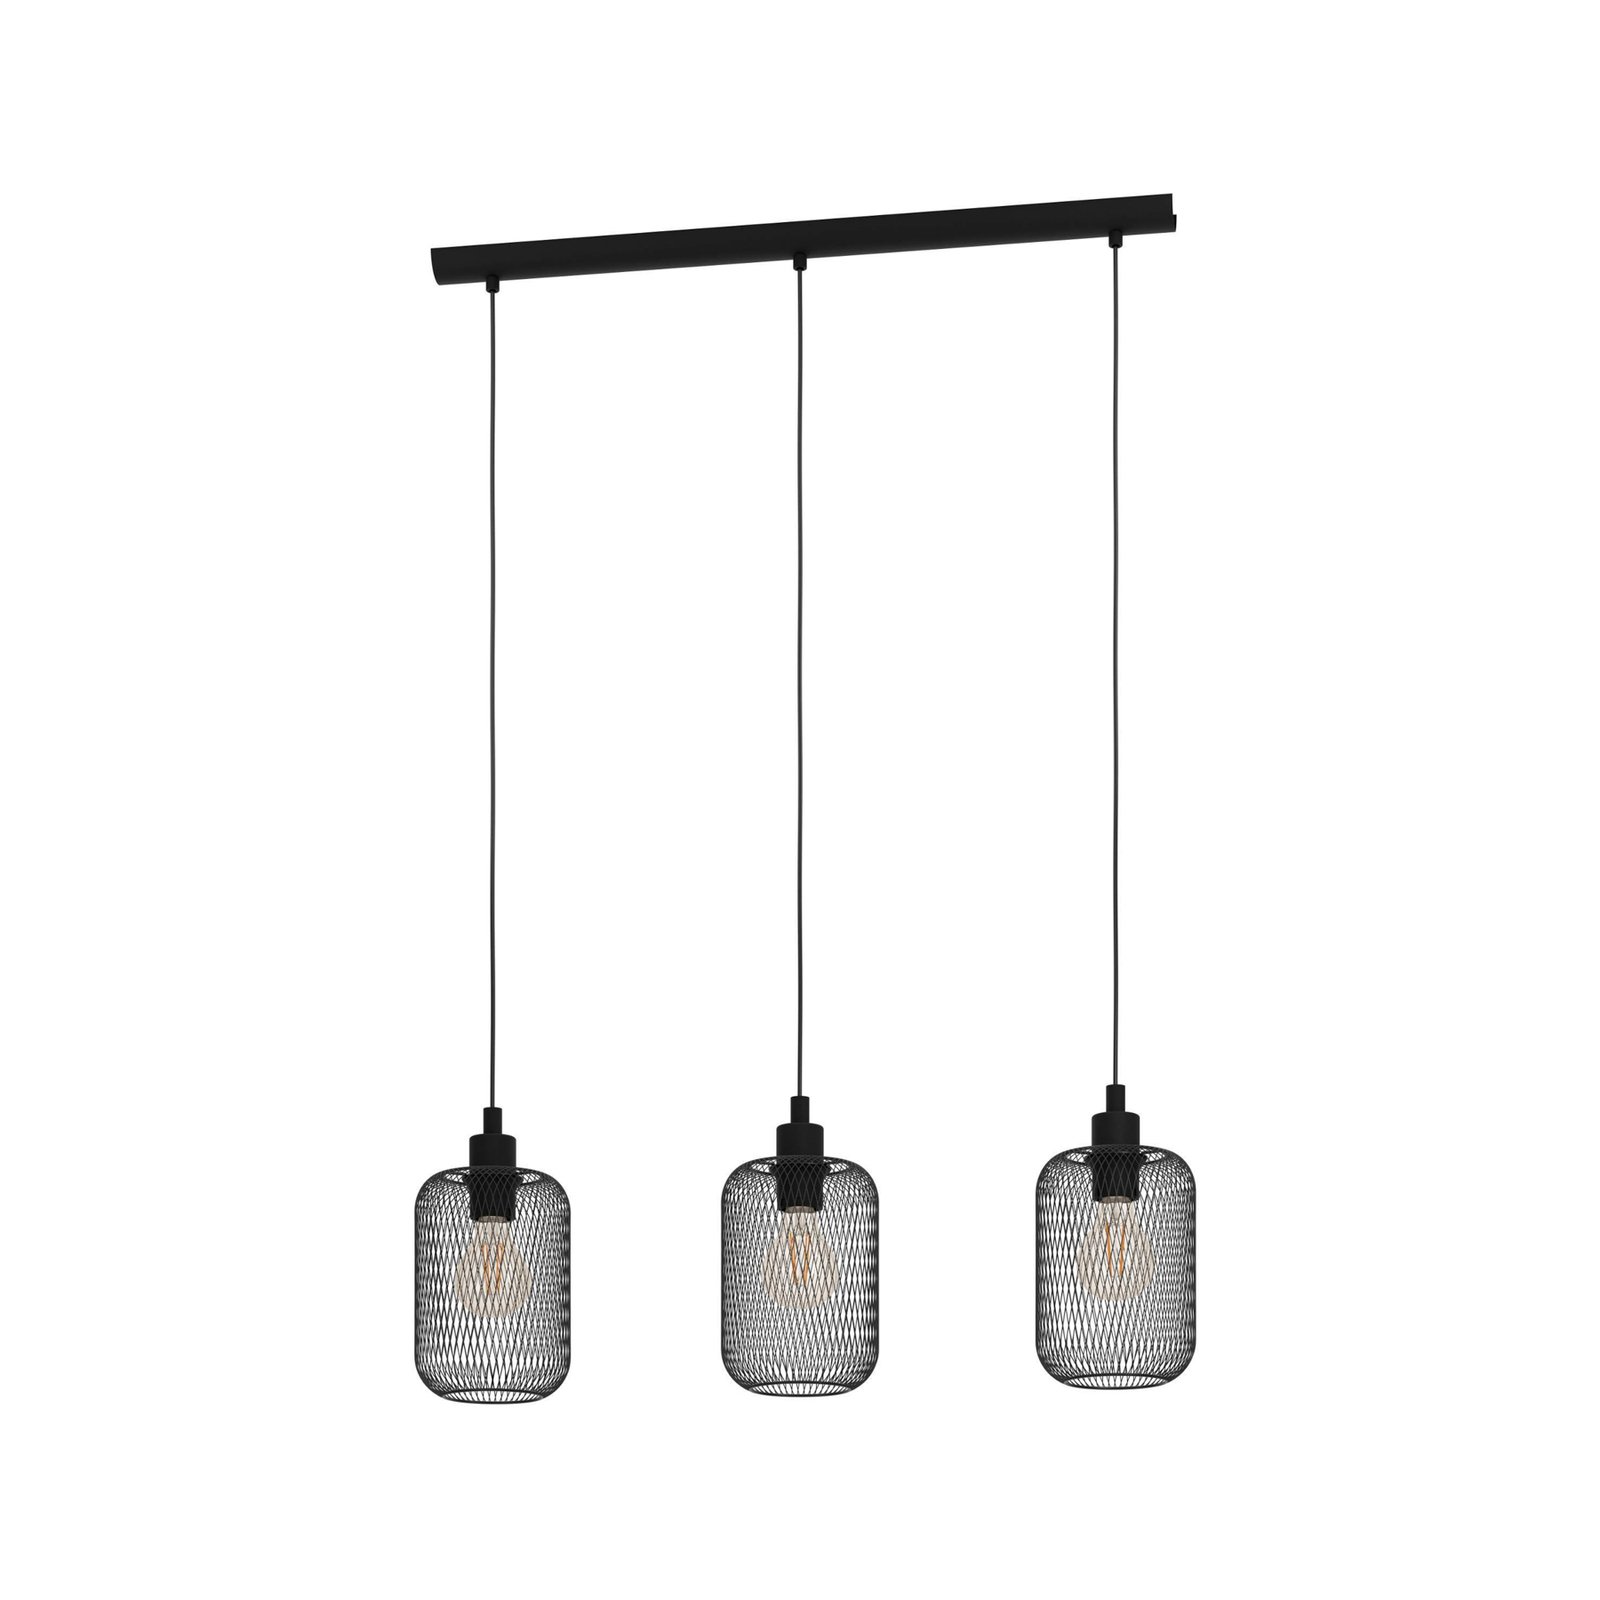 Viseća svjetiljka Wrington, dužina 74 cm, crna, 3 žarulje, čelik